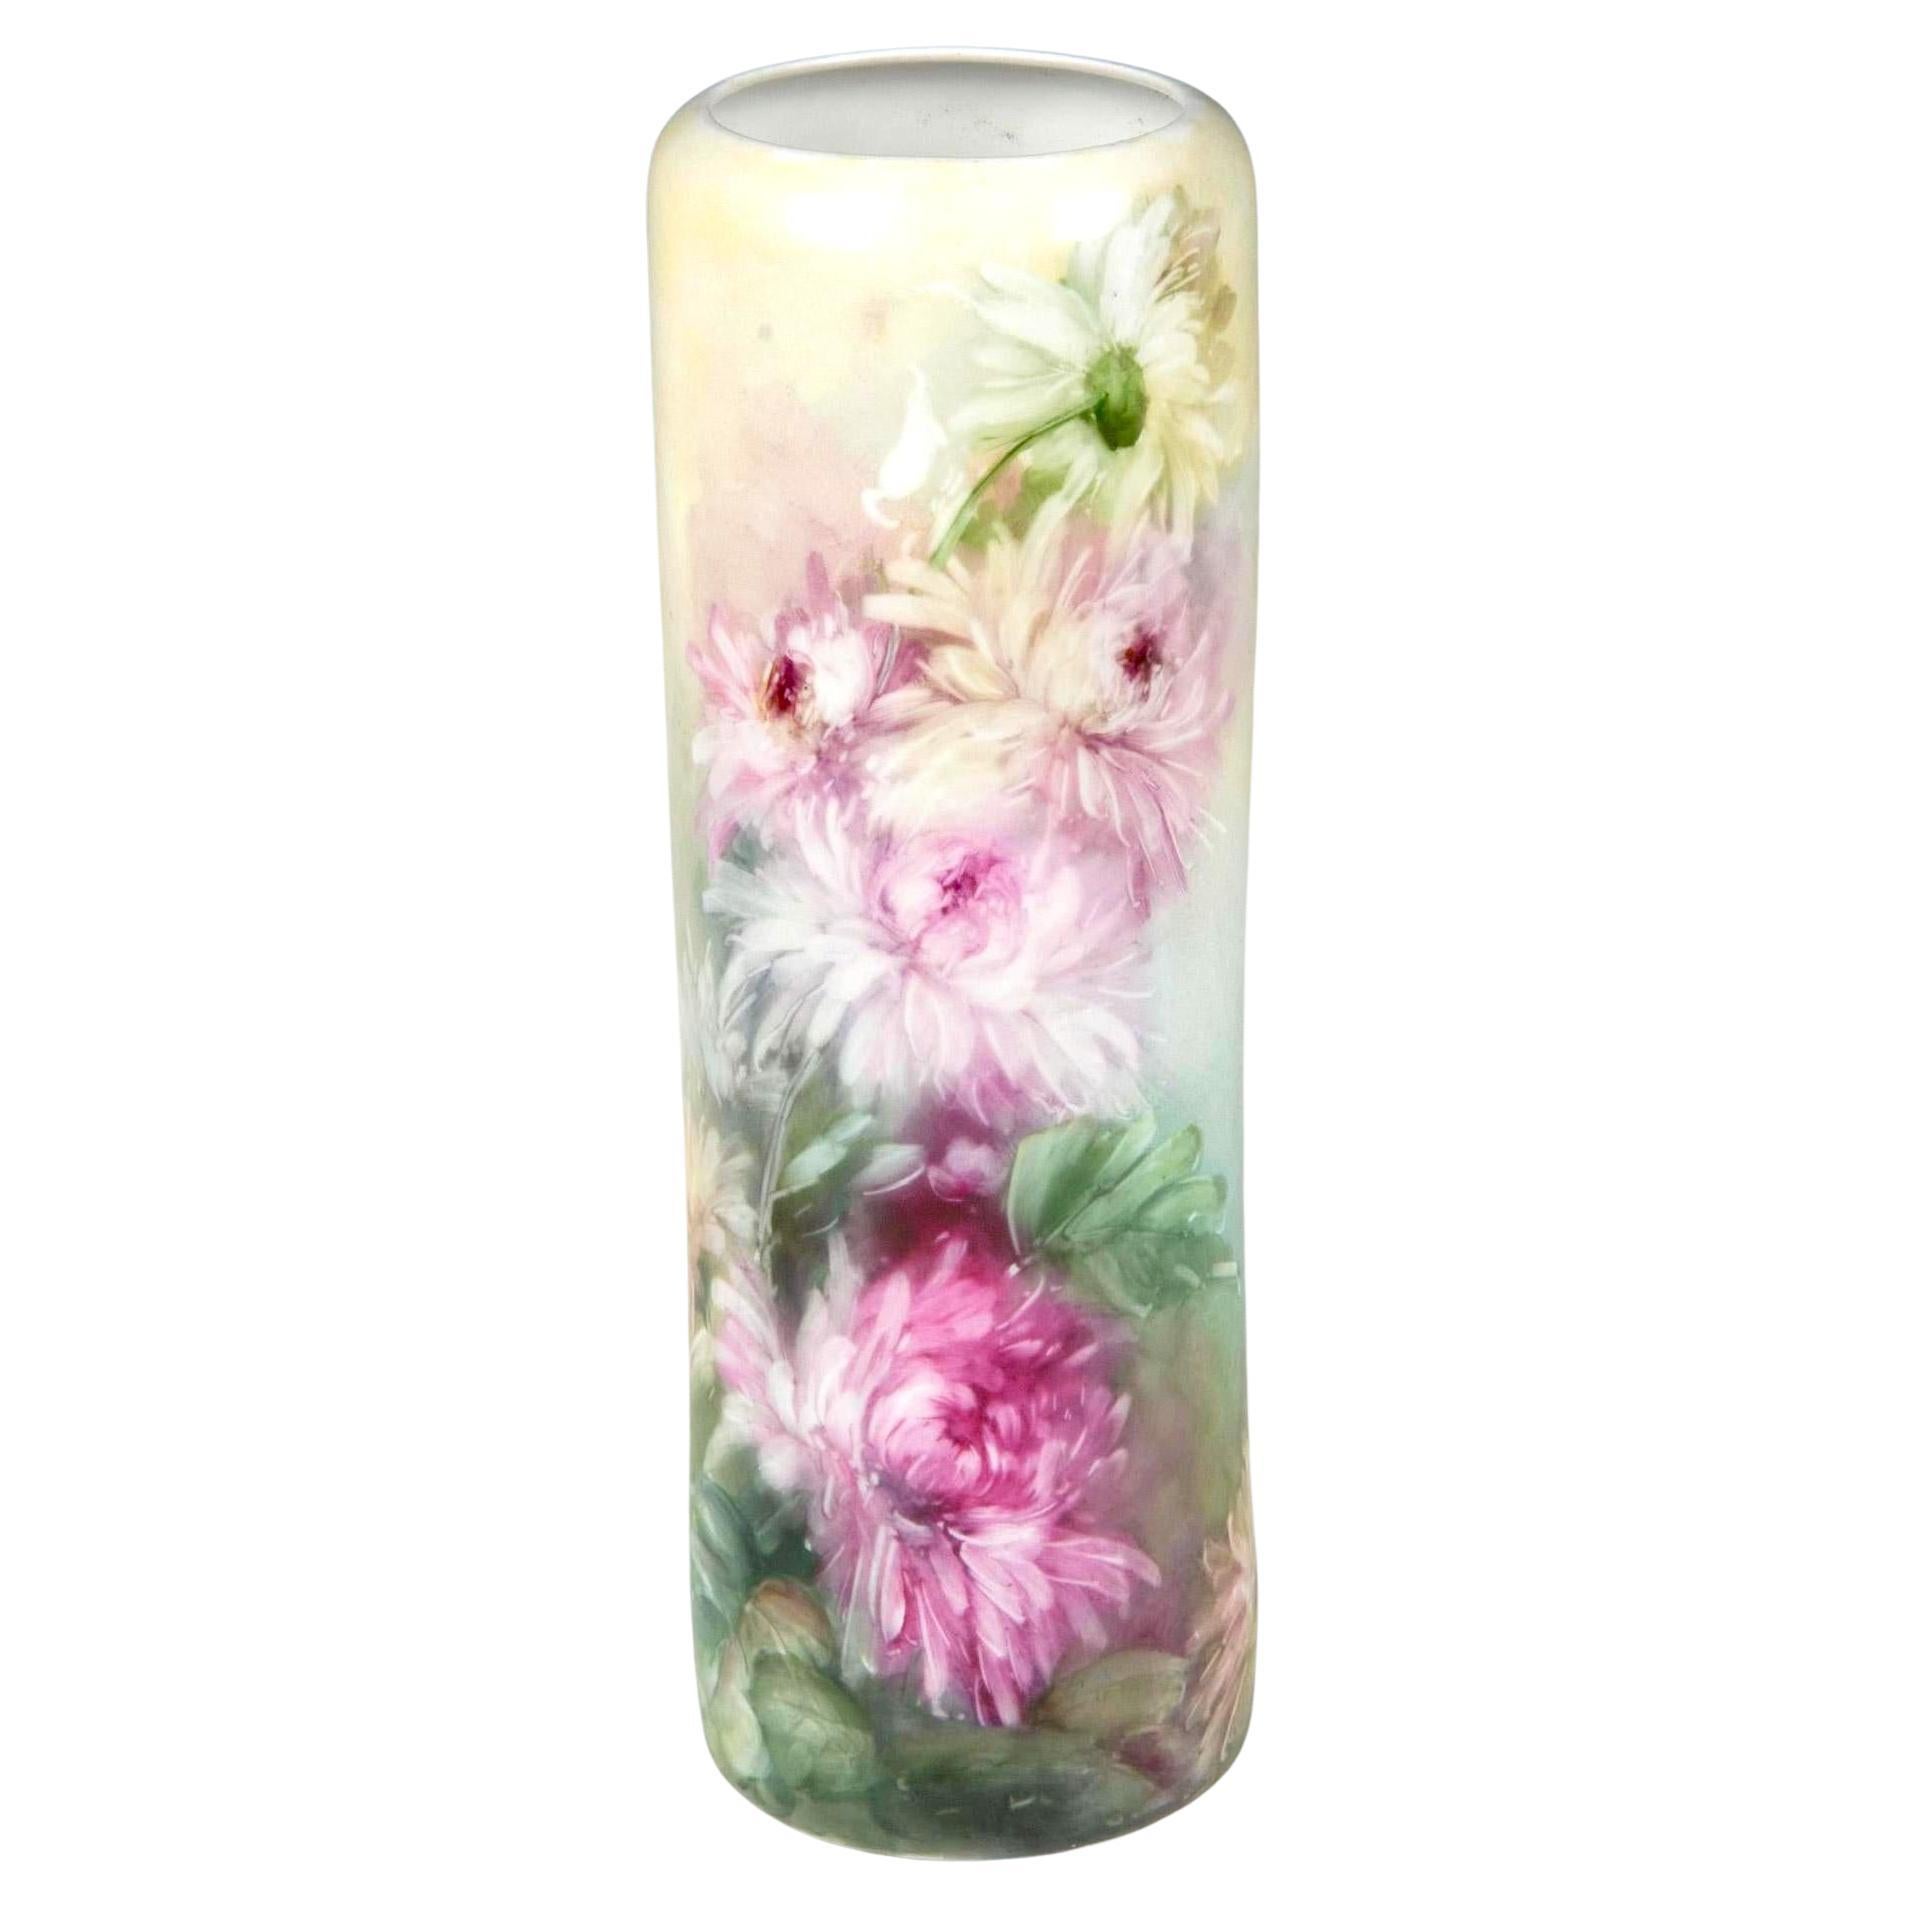 Antique Vienna Austria Hand Painted Porcelain Floral Vase By Leonard Co For Sale 2